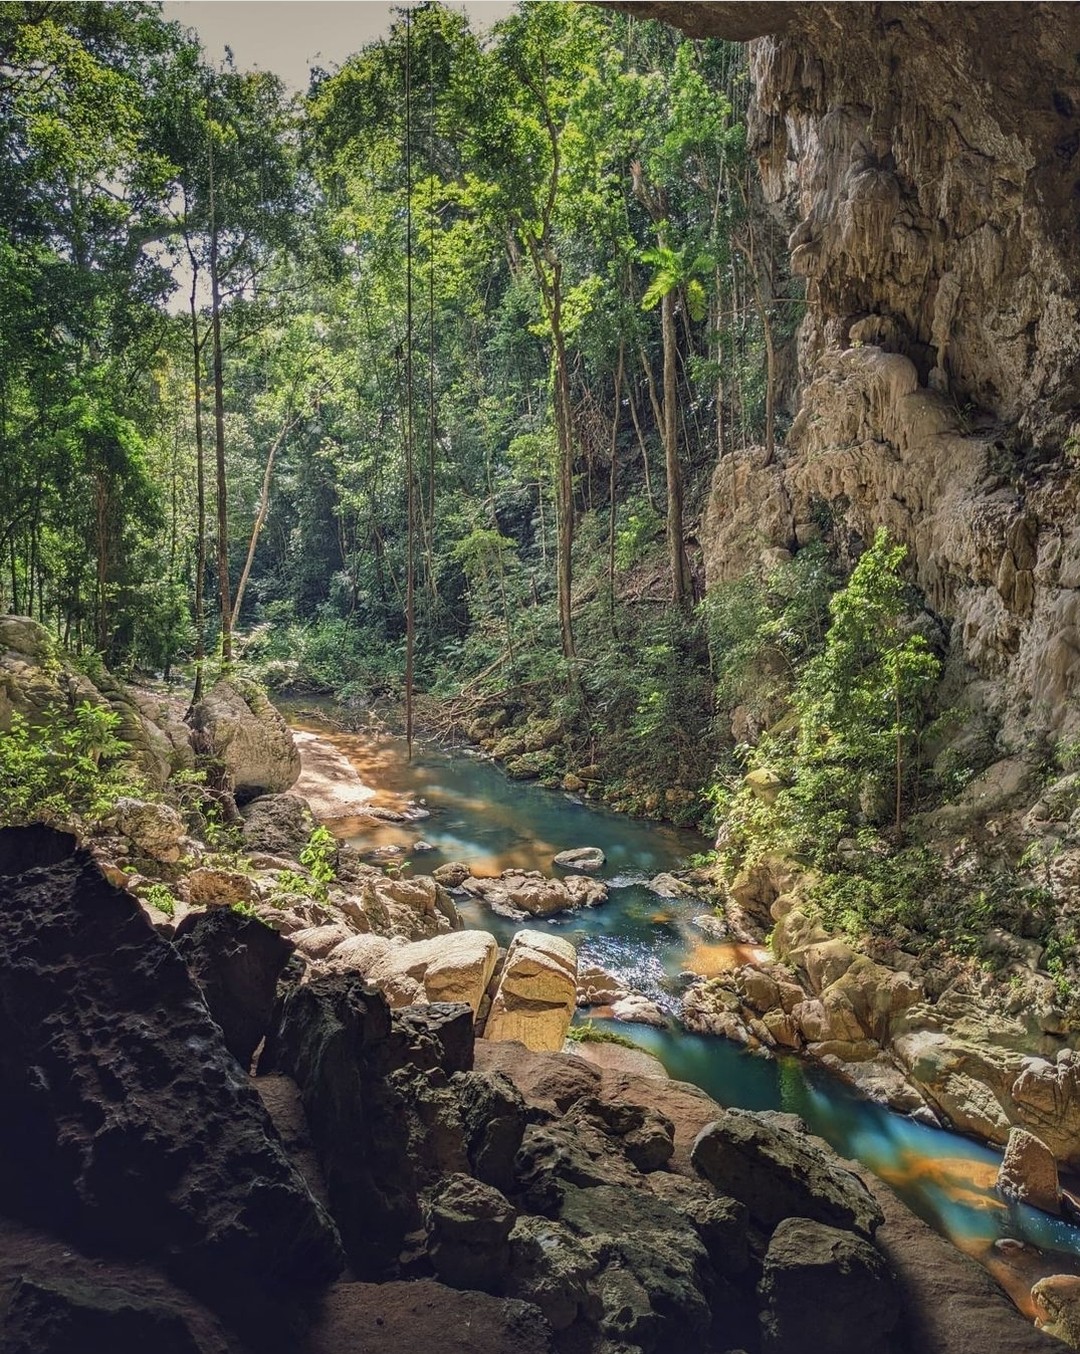 Western Belize is de thuisbasis van een uitgebreid netwerk van grotten die ooit werd gebruikt als ruimtes voor aanbidding, rituelen en begrafenissen door de oude Maya's. Voeg zeker een van de vele grotten toe aan je route door het binnenland. #travelbelize????: @wanderesswithastory